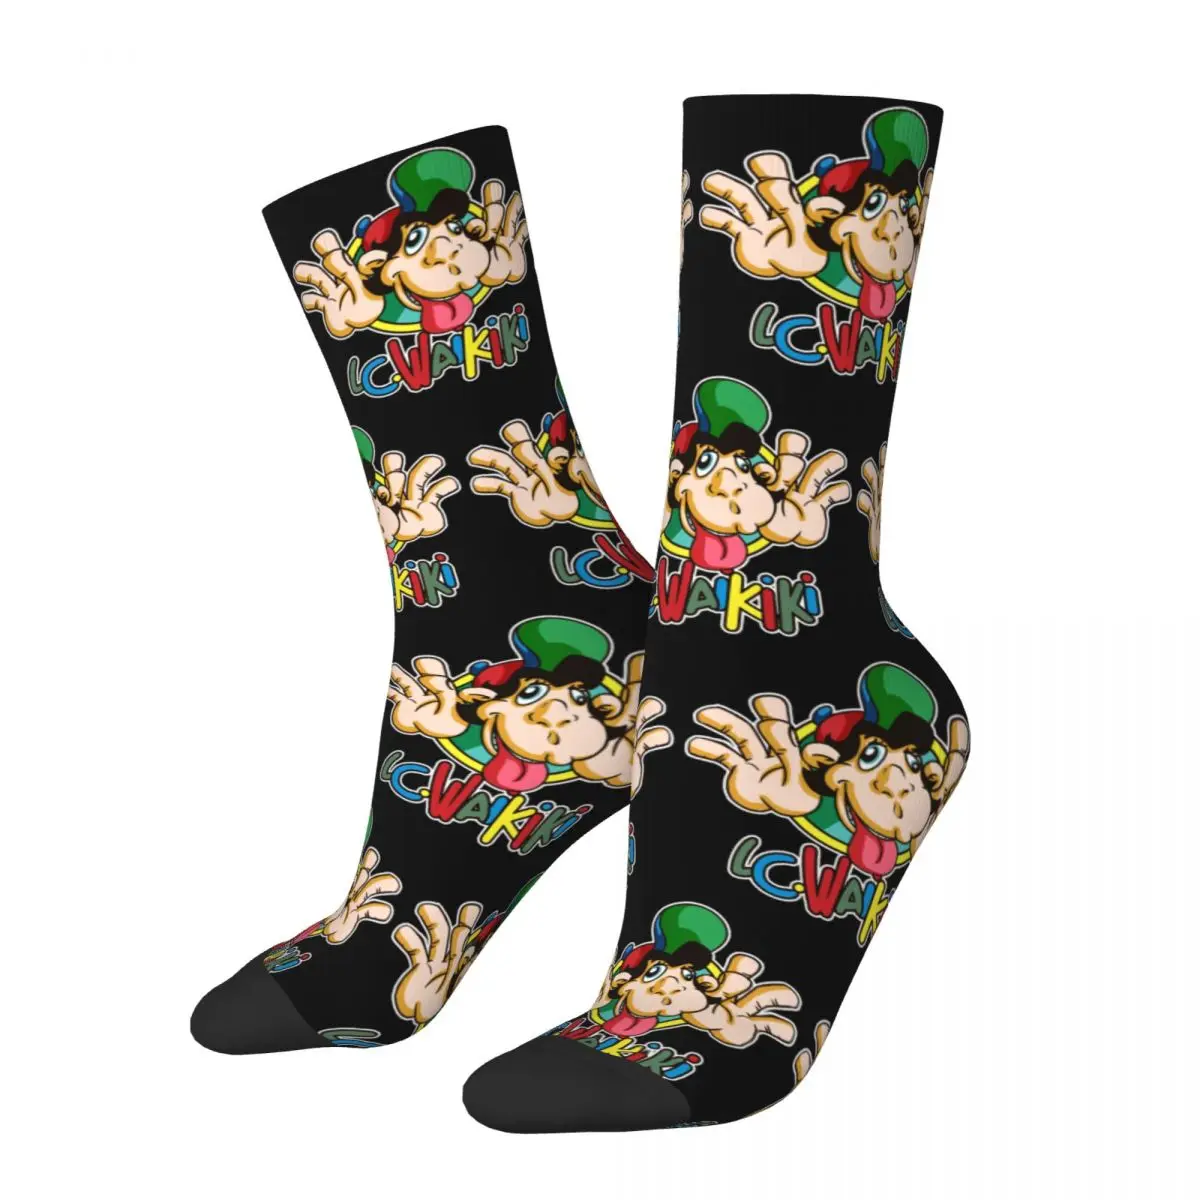 

Retro LC Waikiki Singe Monkey Socks Merch All Seasons Cute Crew Socks Sweat Absorbing Wonderful Gifts for Women Men